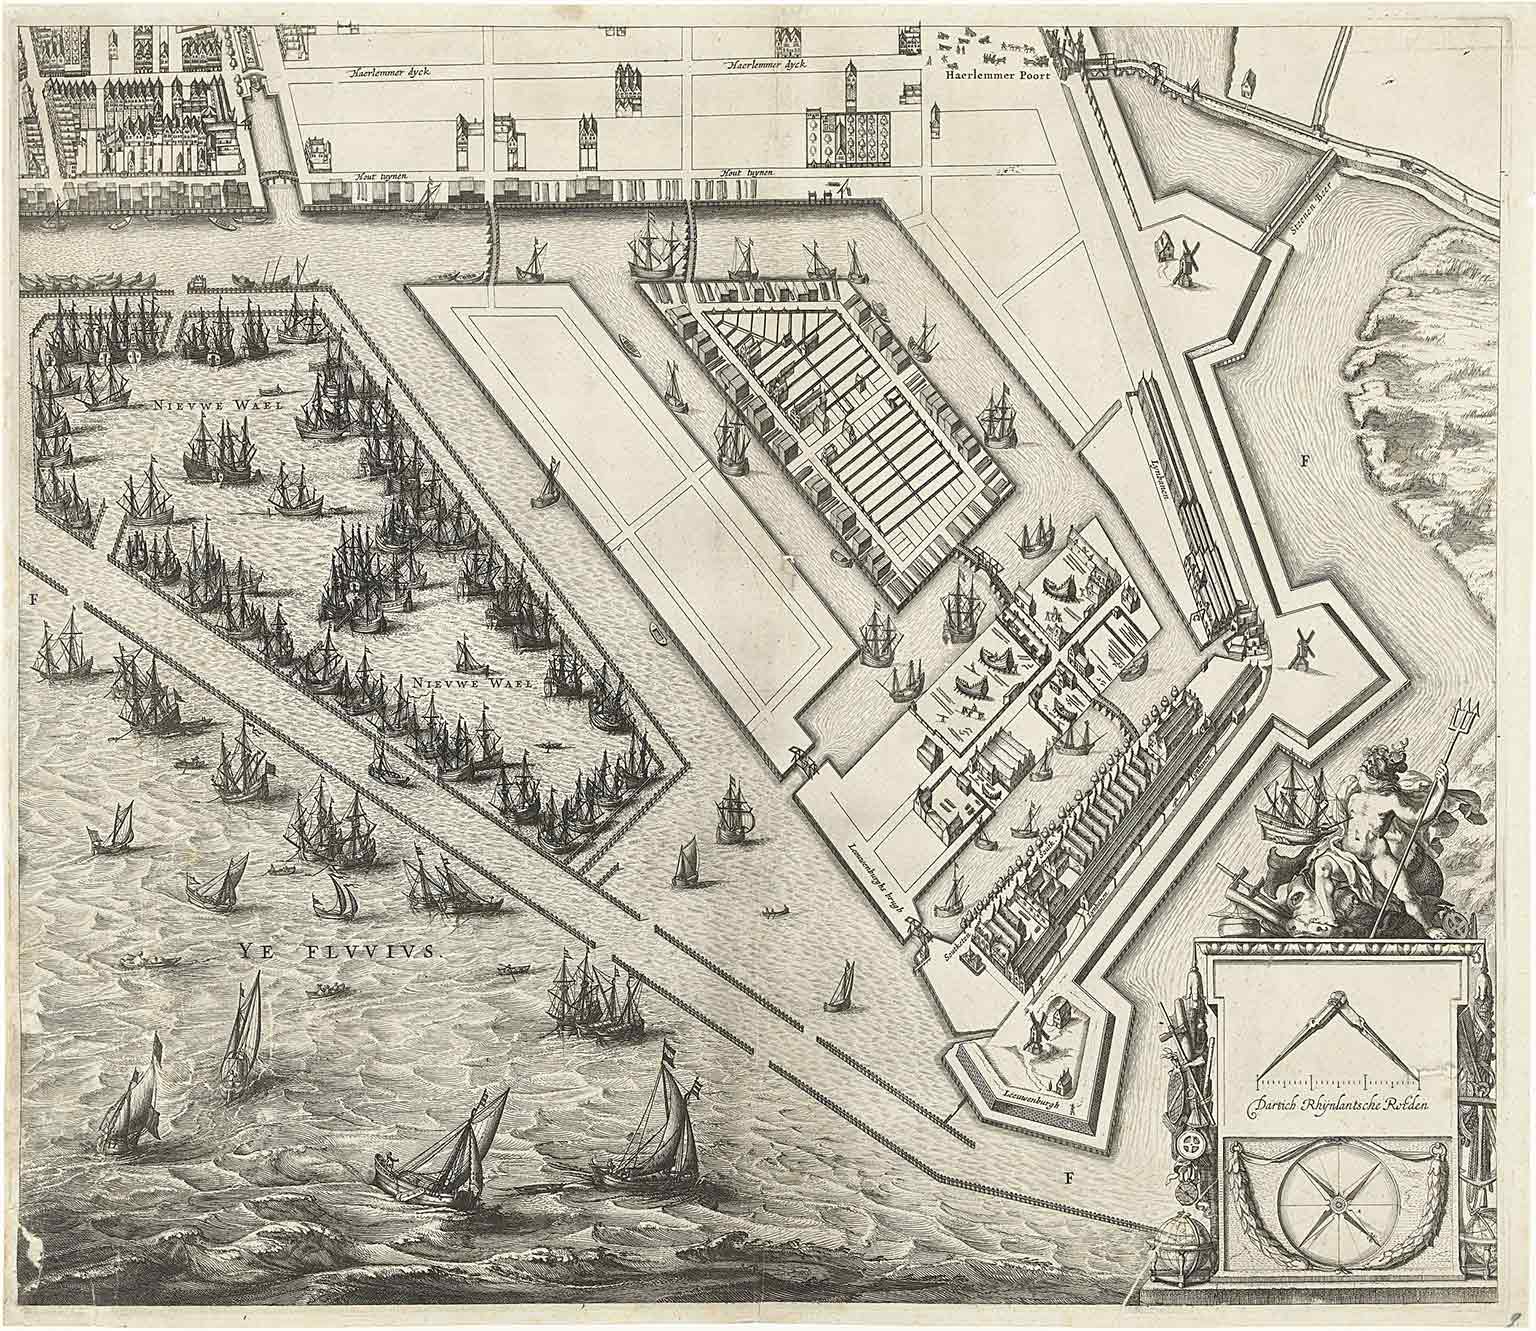 Kaart van de Westelijke Eilanden, Amsterdam, uit 1625 van Balthasar Florisz van Berckenrode